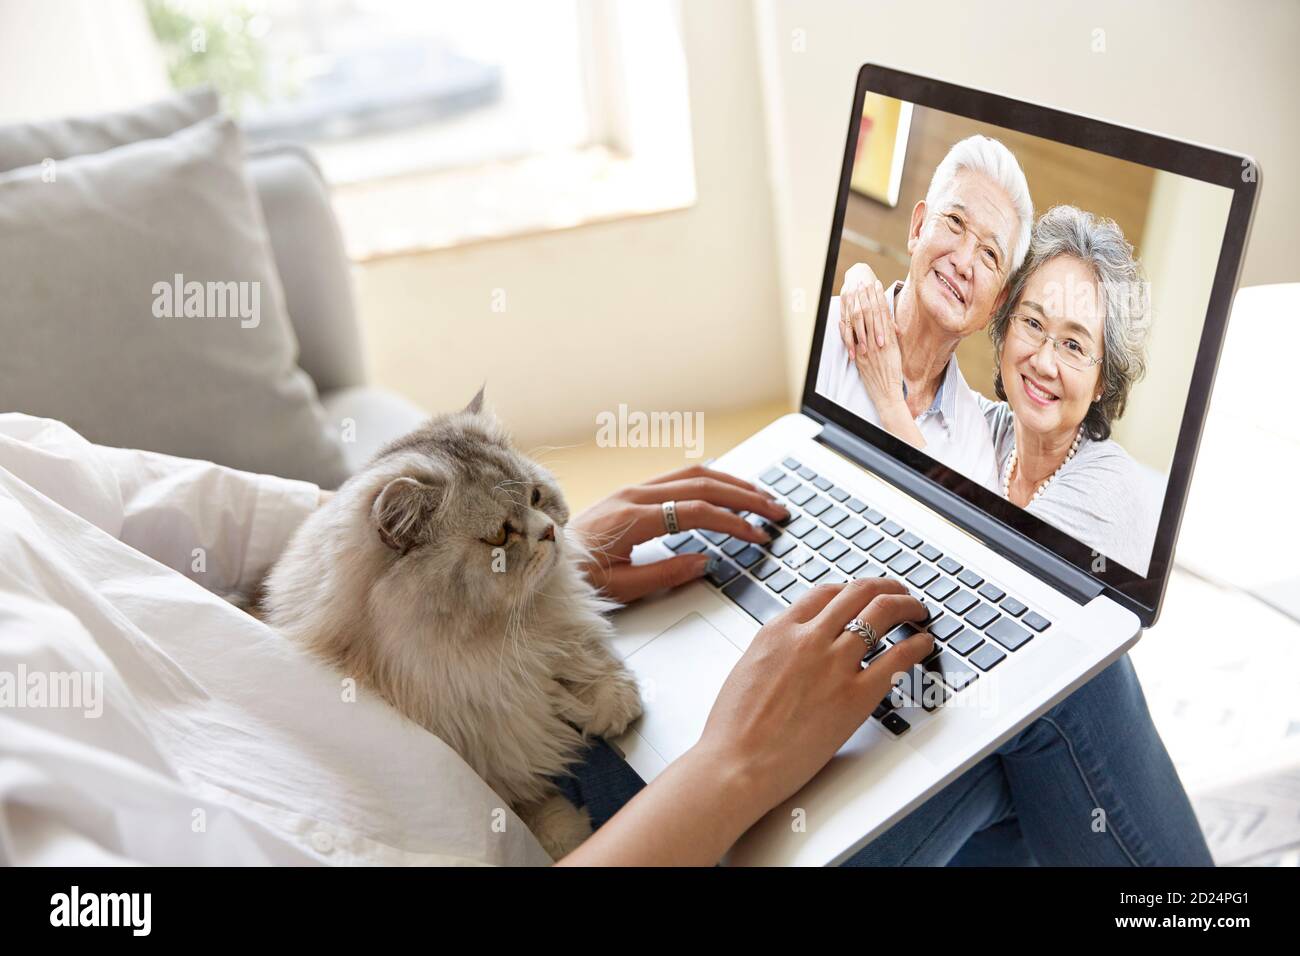 jeune fille adulte asiatique séjournant à la maison avec un chat animal parler en ligne avec des parents âgés par chat vidéo à l'aide d'un ordinateur portable ordinateur Banque D'Images